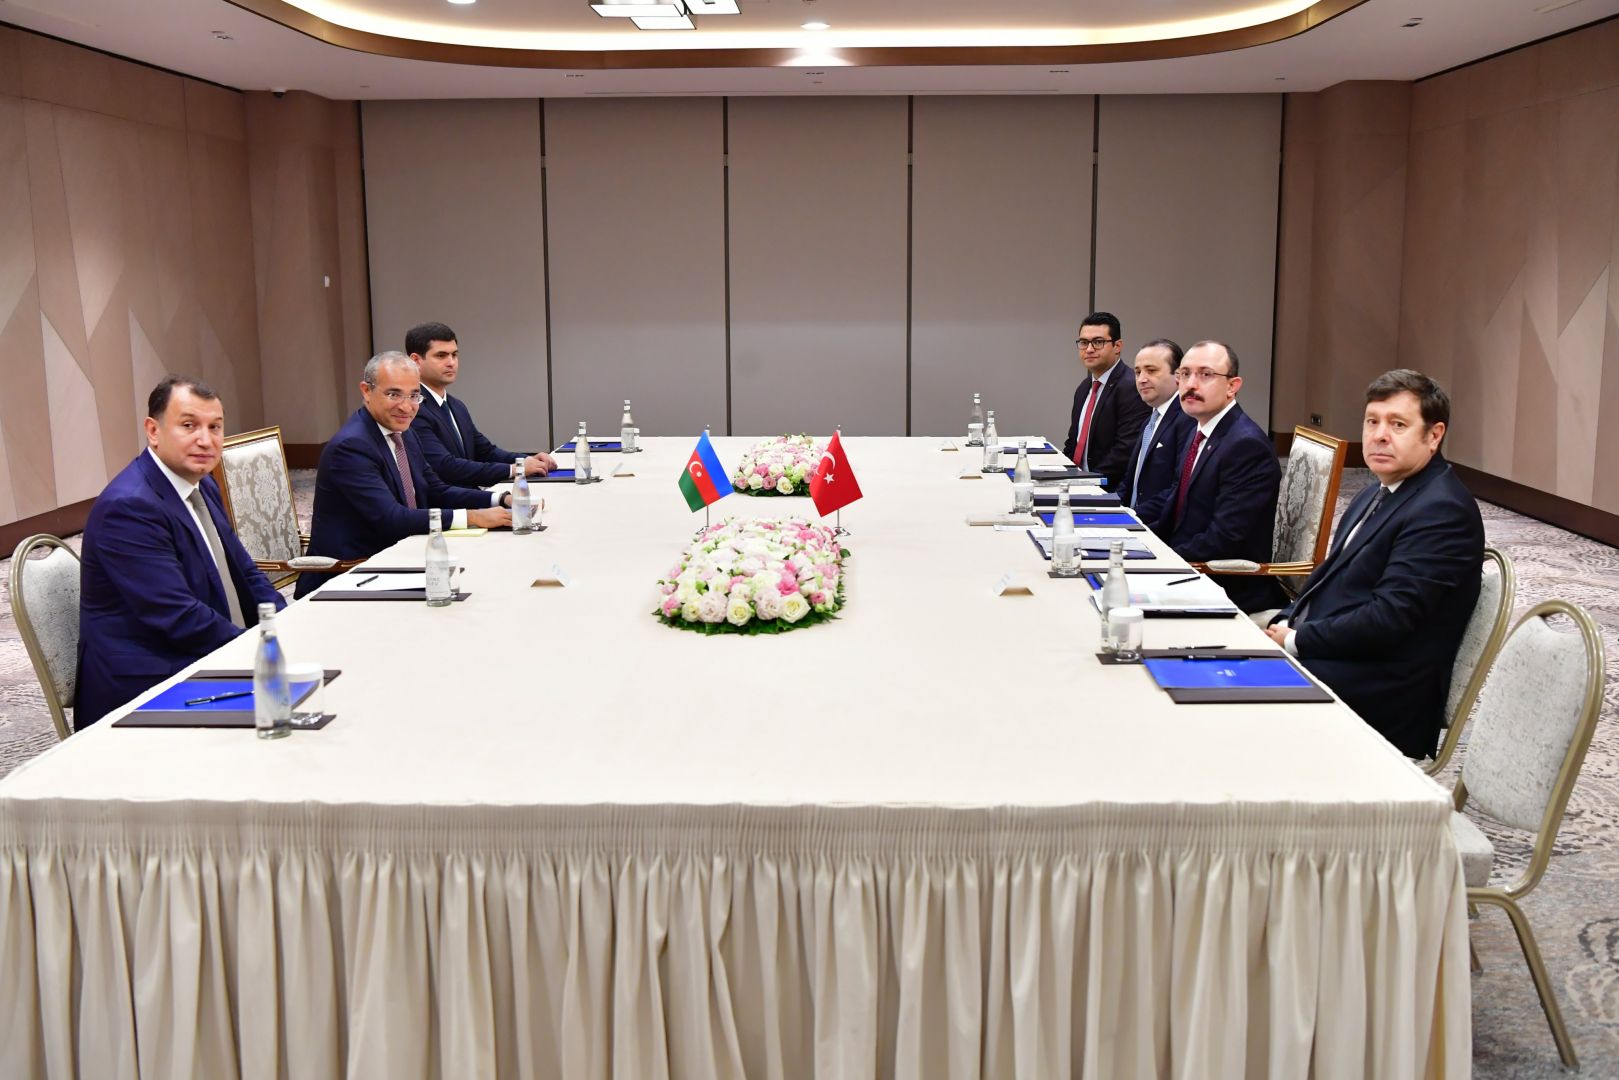 Baku, Ankara discuss further strengthening of partnership [PHOTO]